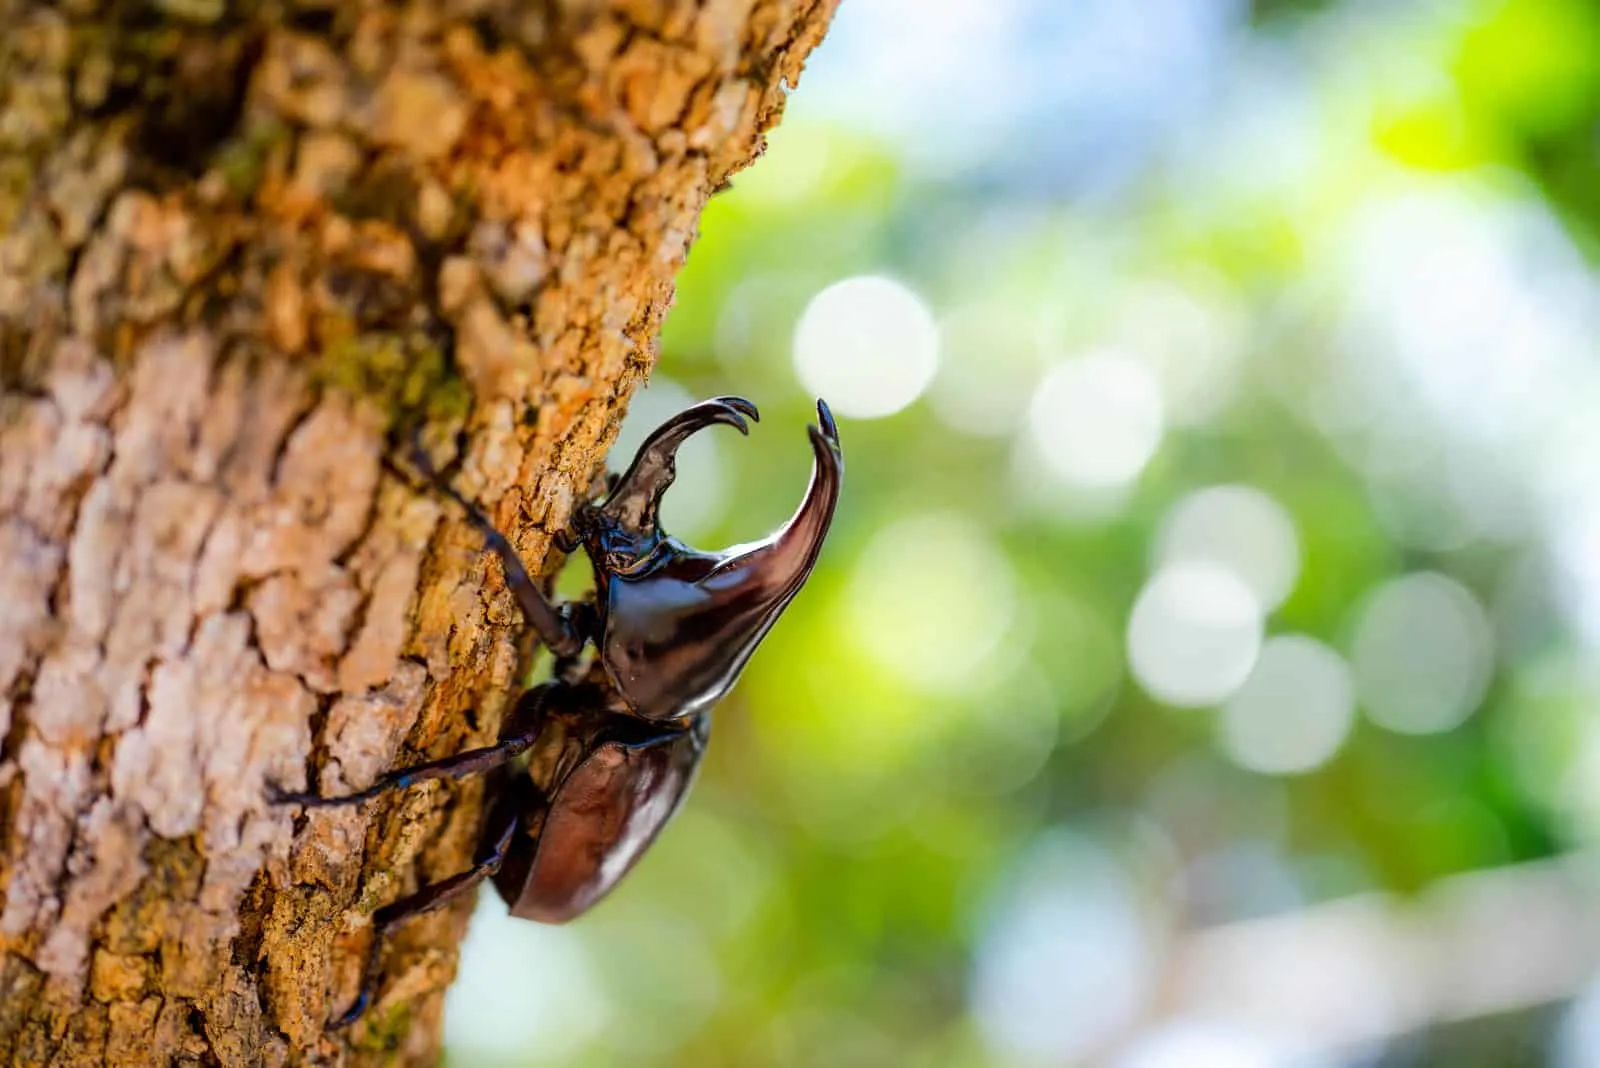 a black beetle climbs a tree